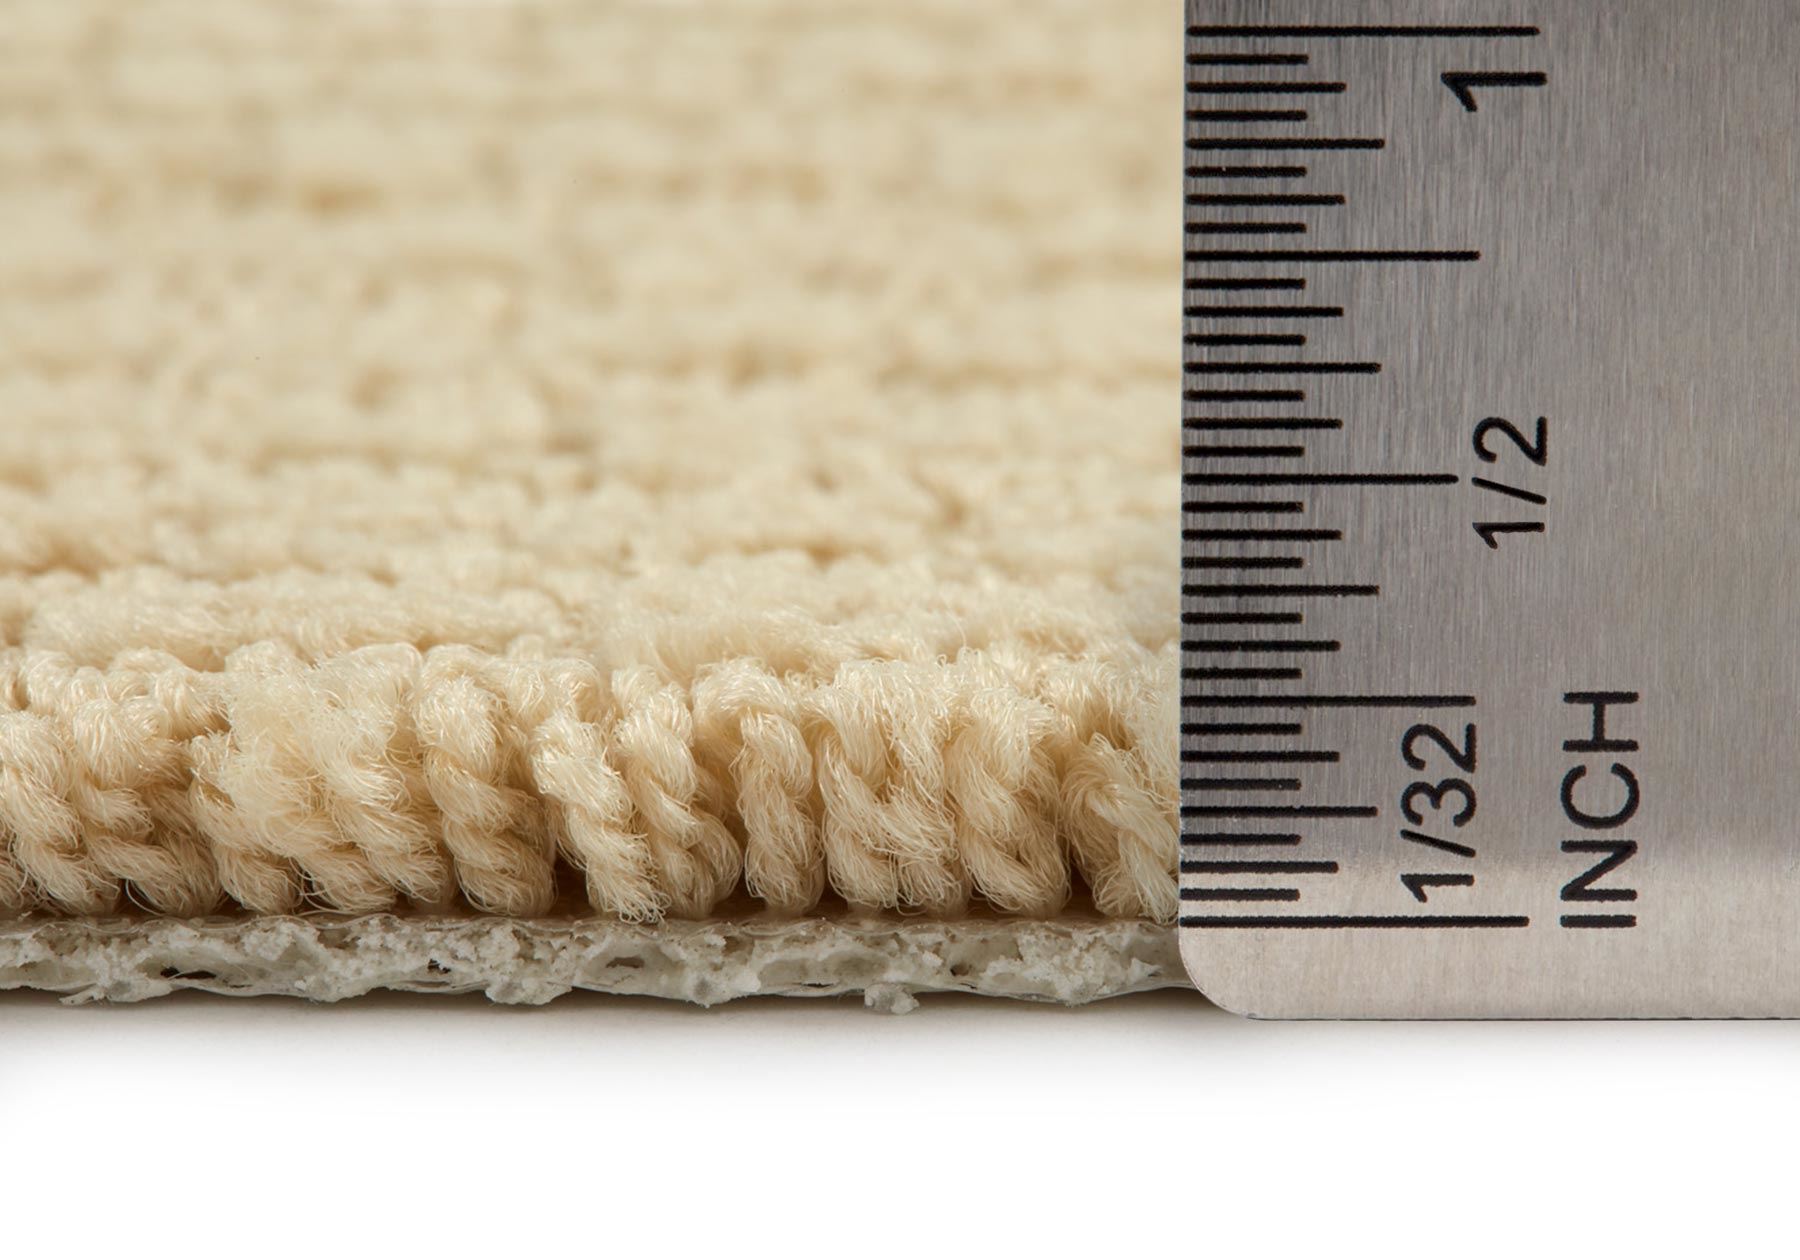 Envision Linen Carpet